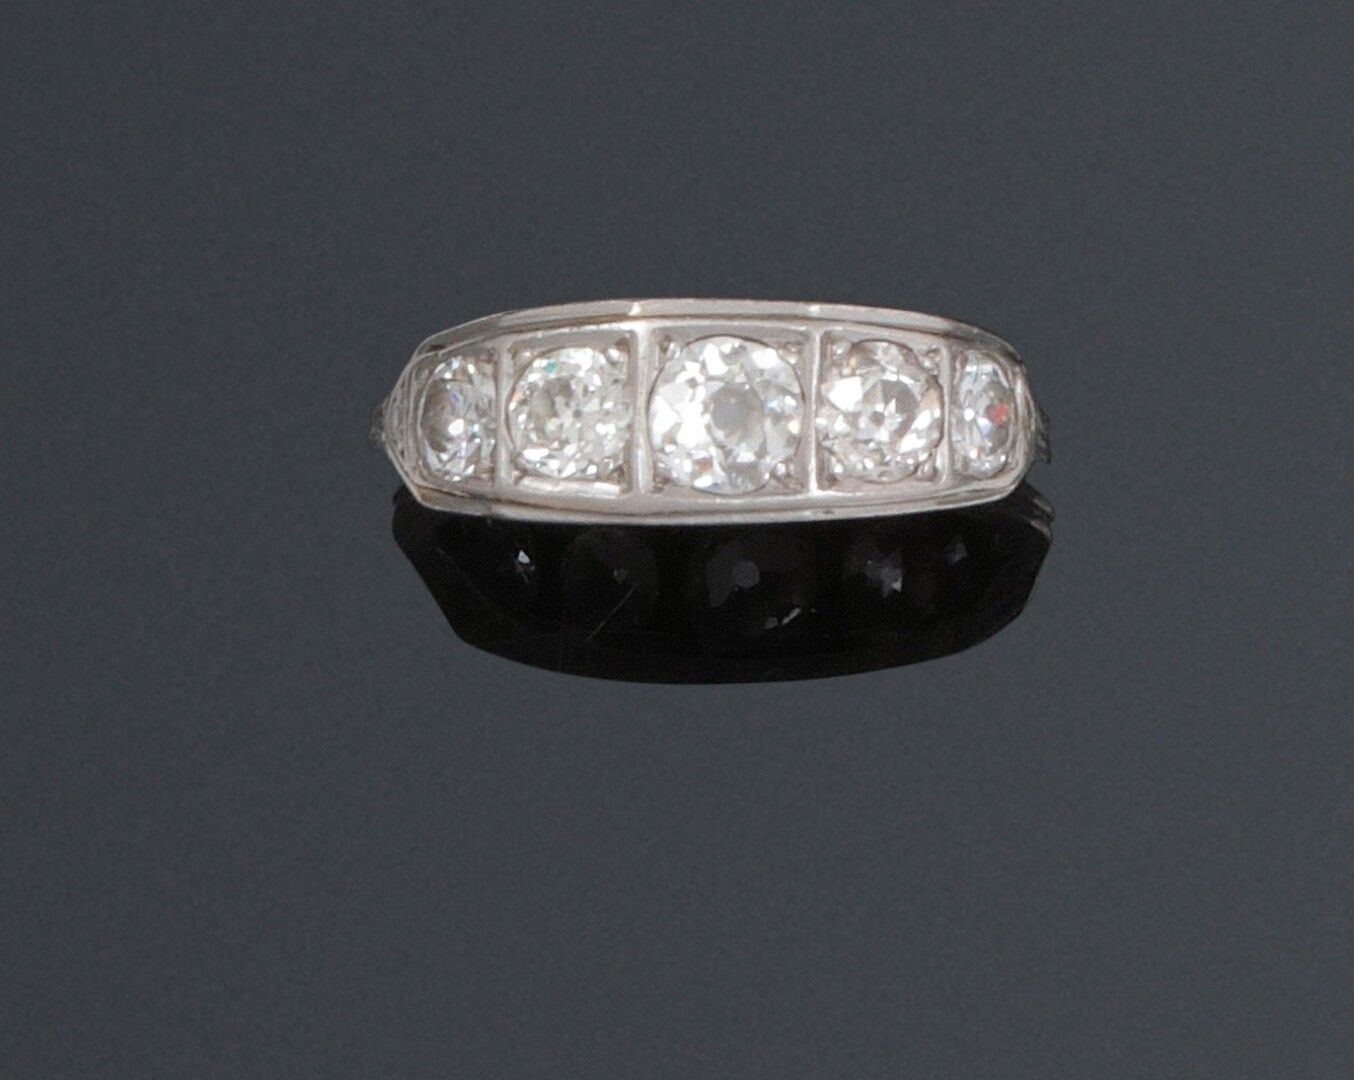 Null 古董河戒指上镶嵌着一排五颗钻石。铂金镶嵌(磨损)

钻石总重量：约1.20克拉。

重量：3.5克。